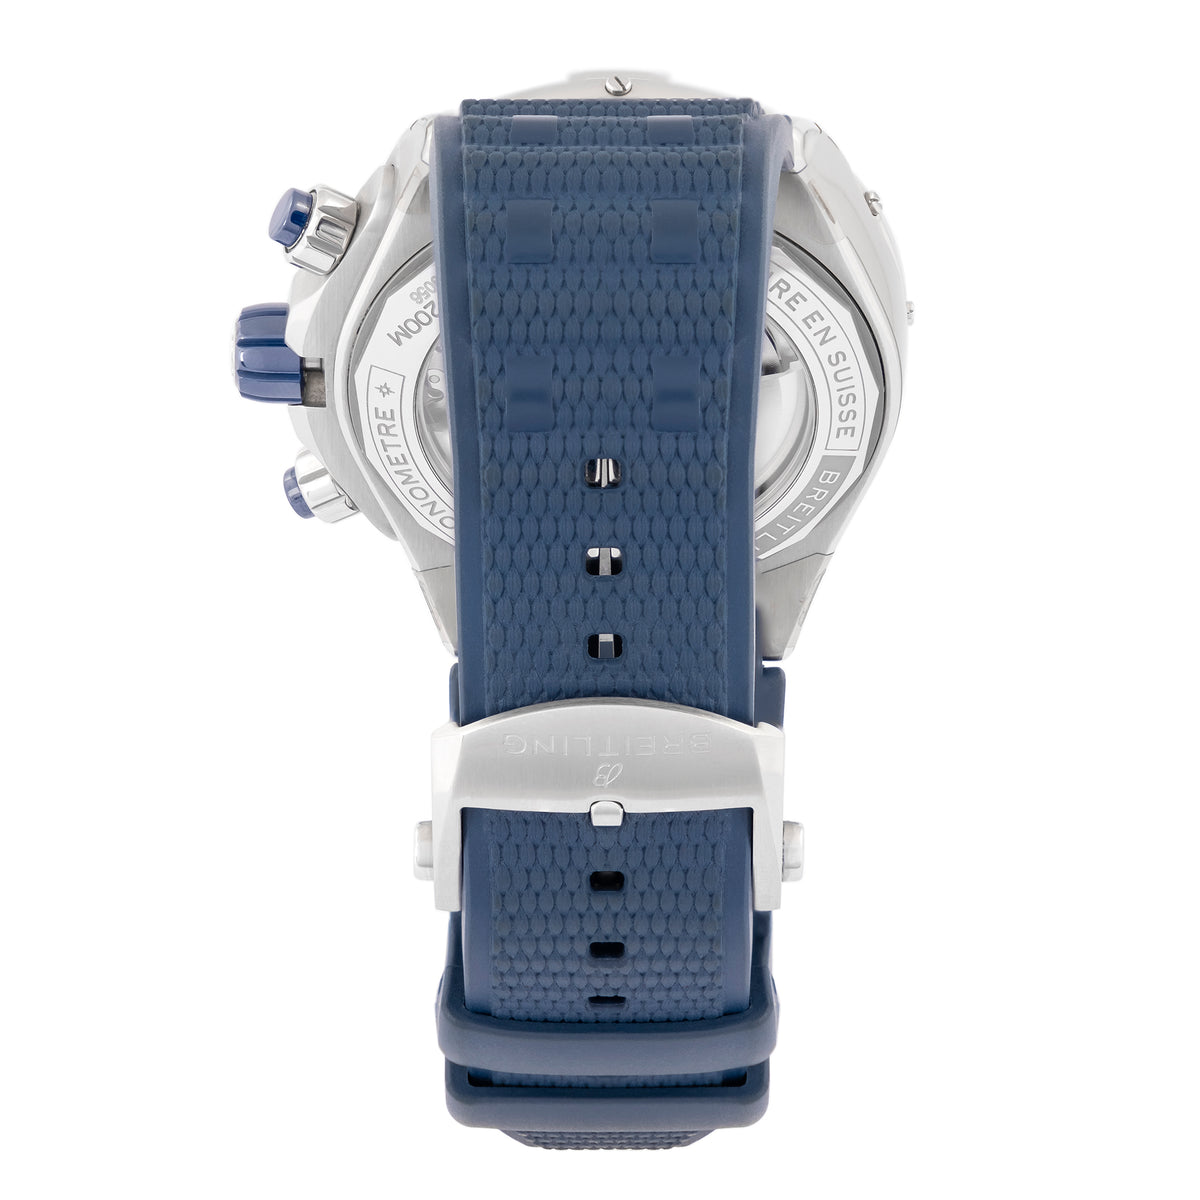 Breitling Super Chronomat B01 44 AB0136